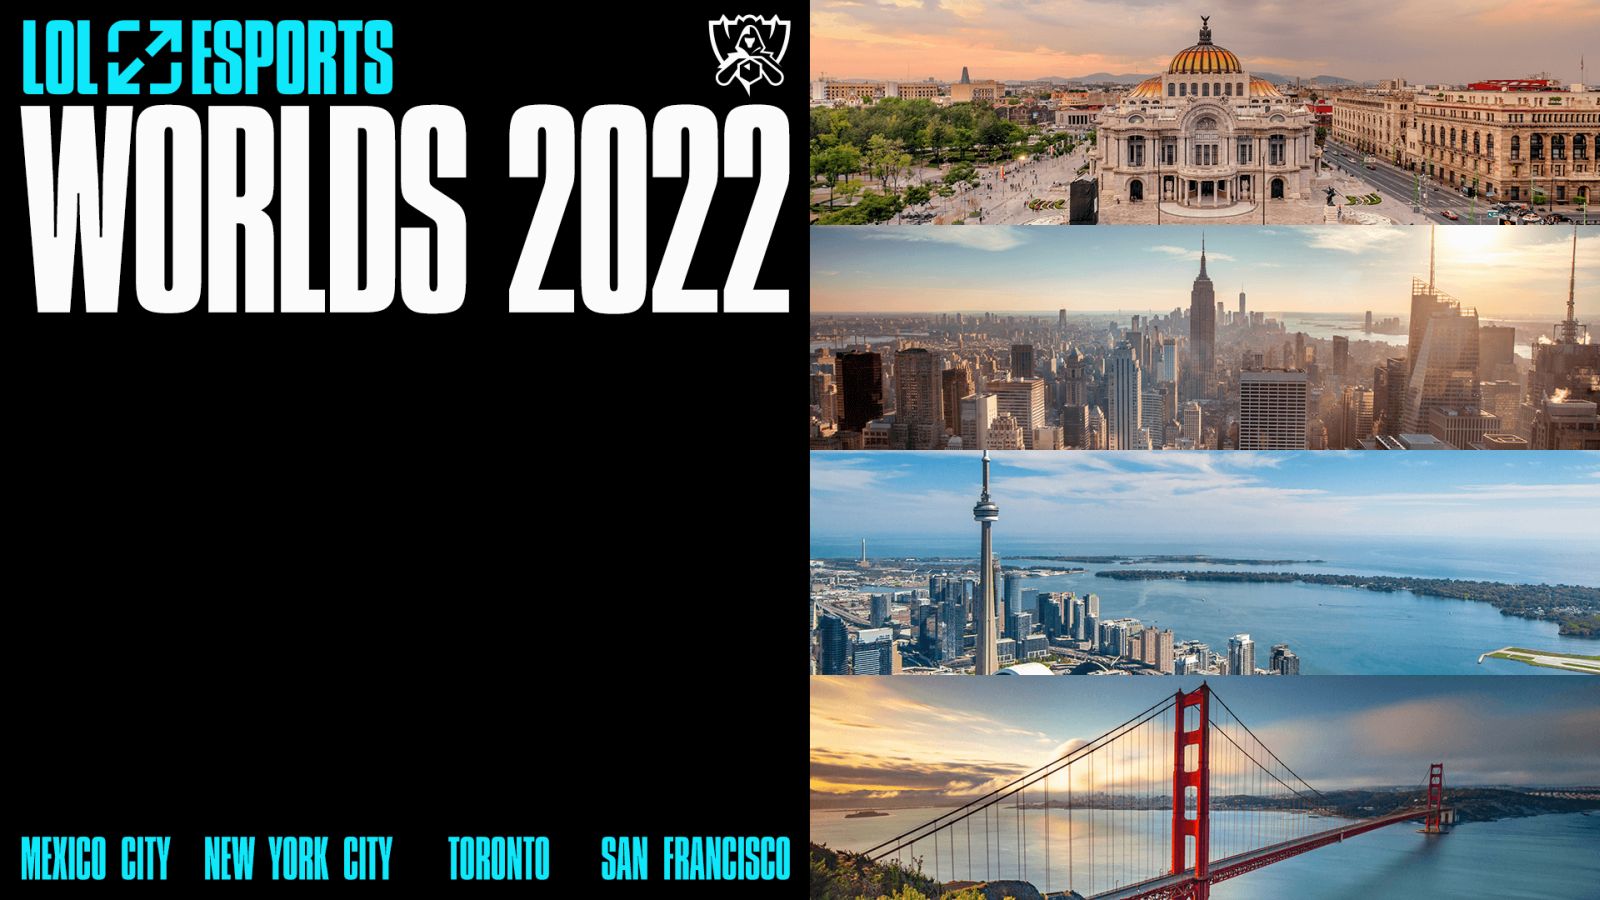 Worlds 2021: Mundial de LoL é confirmado na Europa - Mais Esports